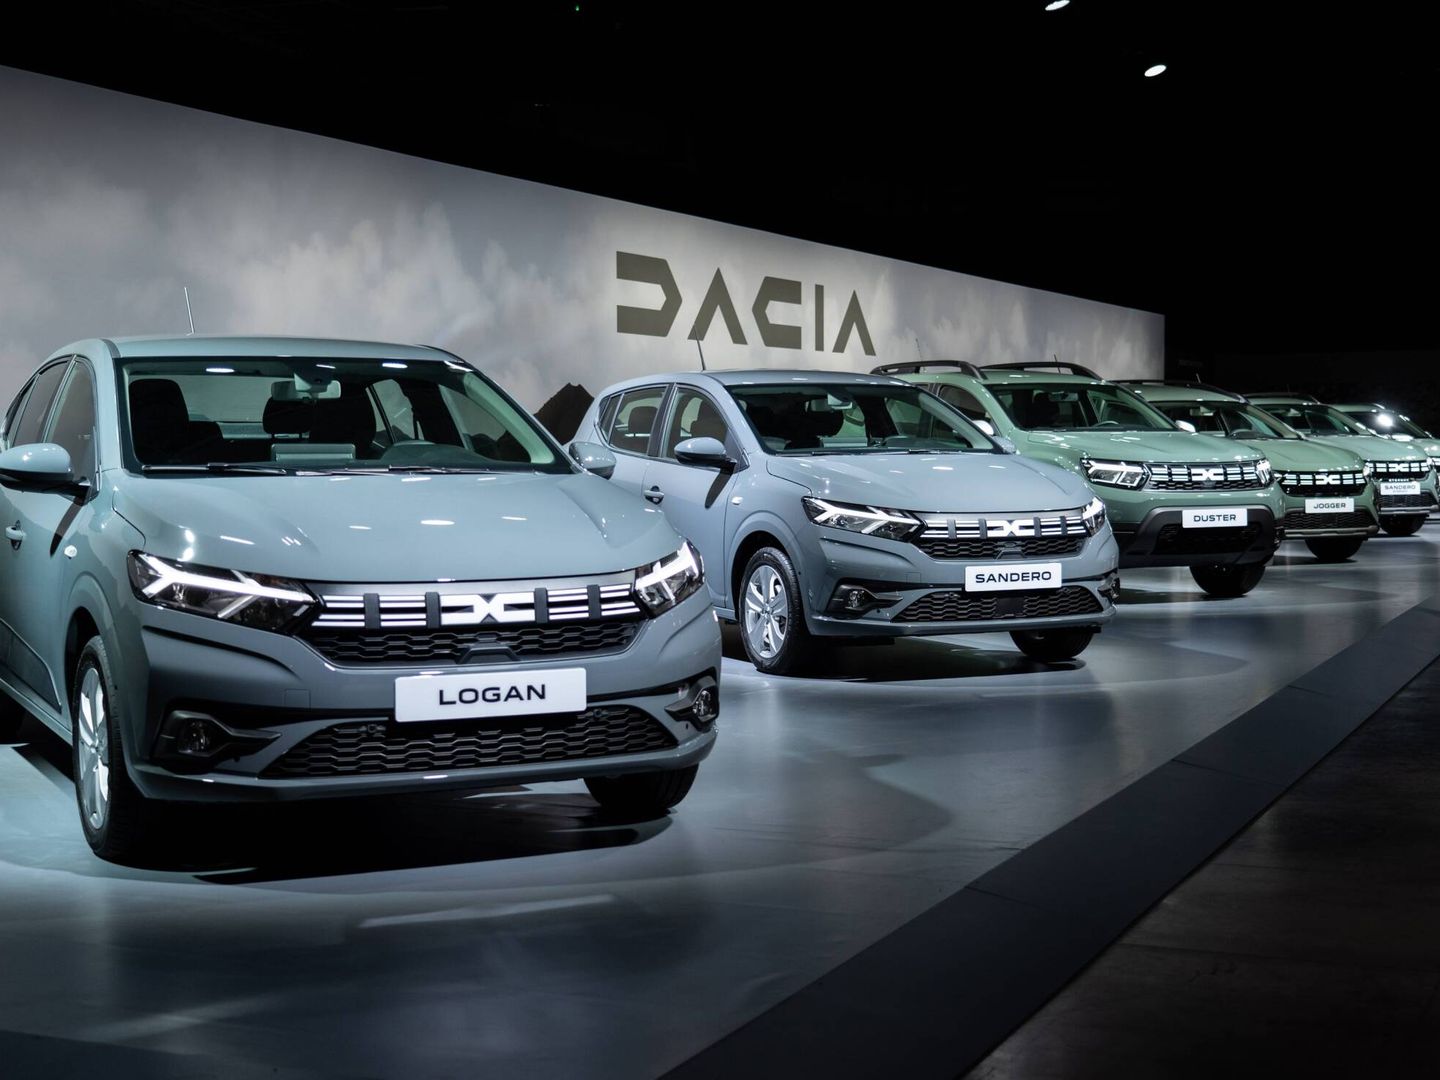 Toda la gama Dacia acaba de estrenar identidad corporativa; incluso el Logan, que deja de venderse en España.